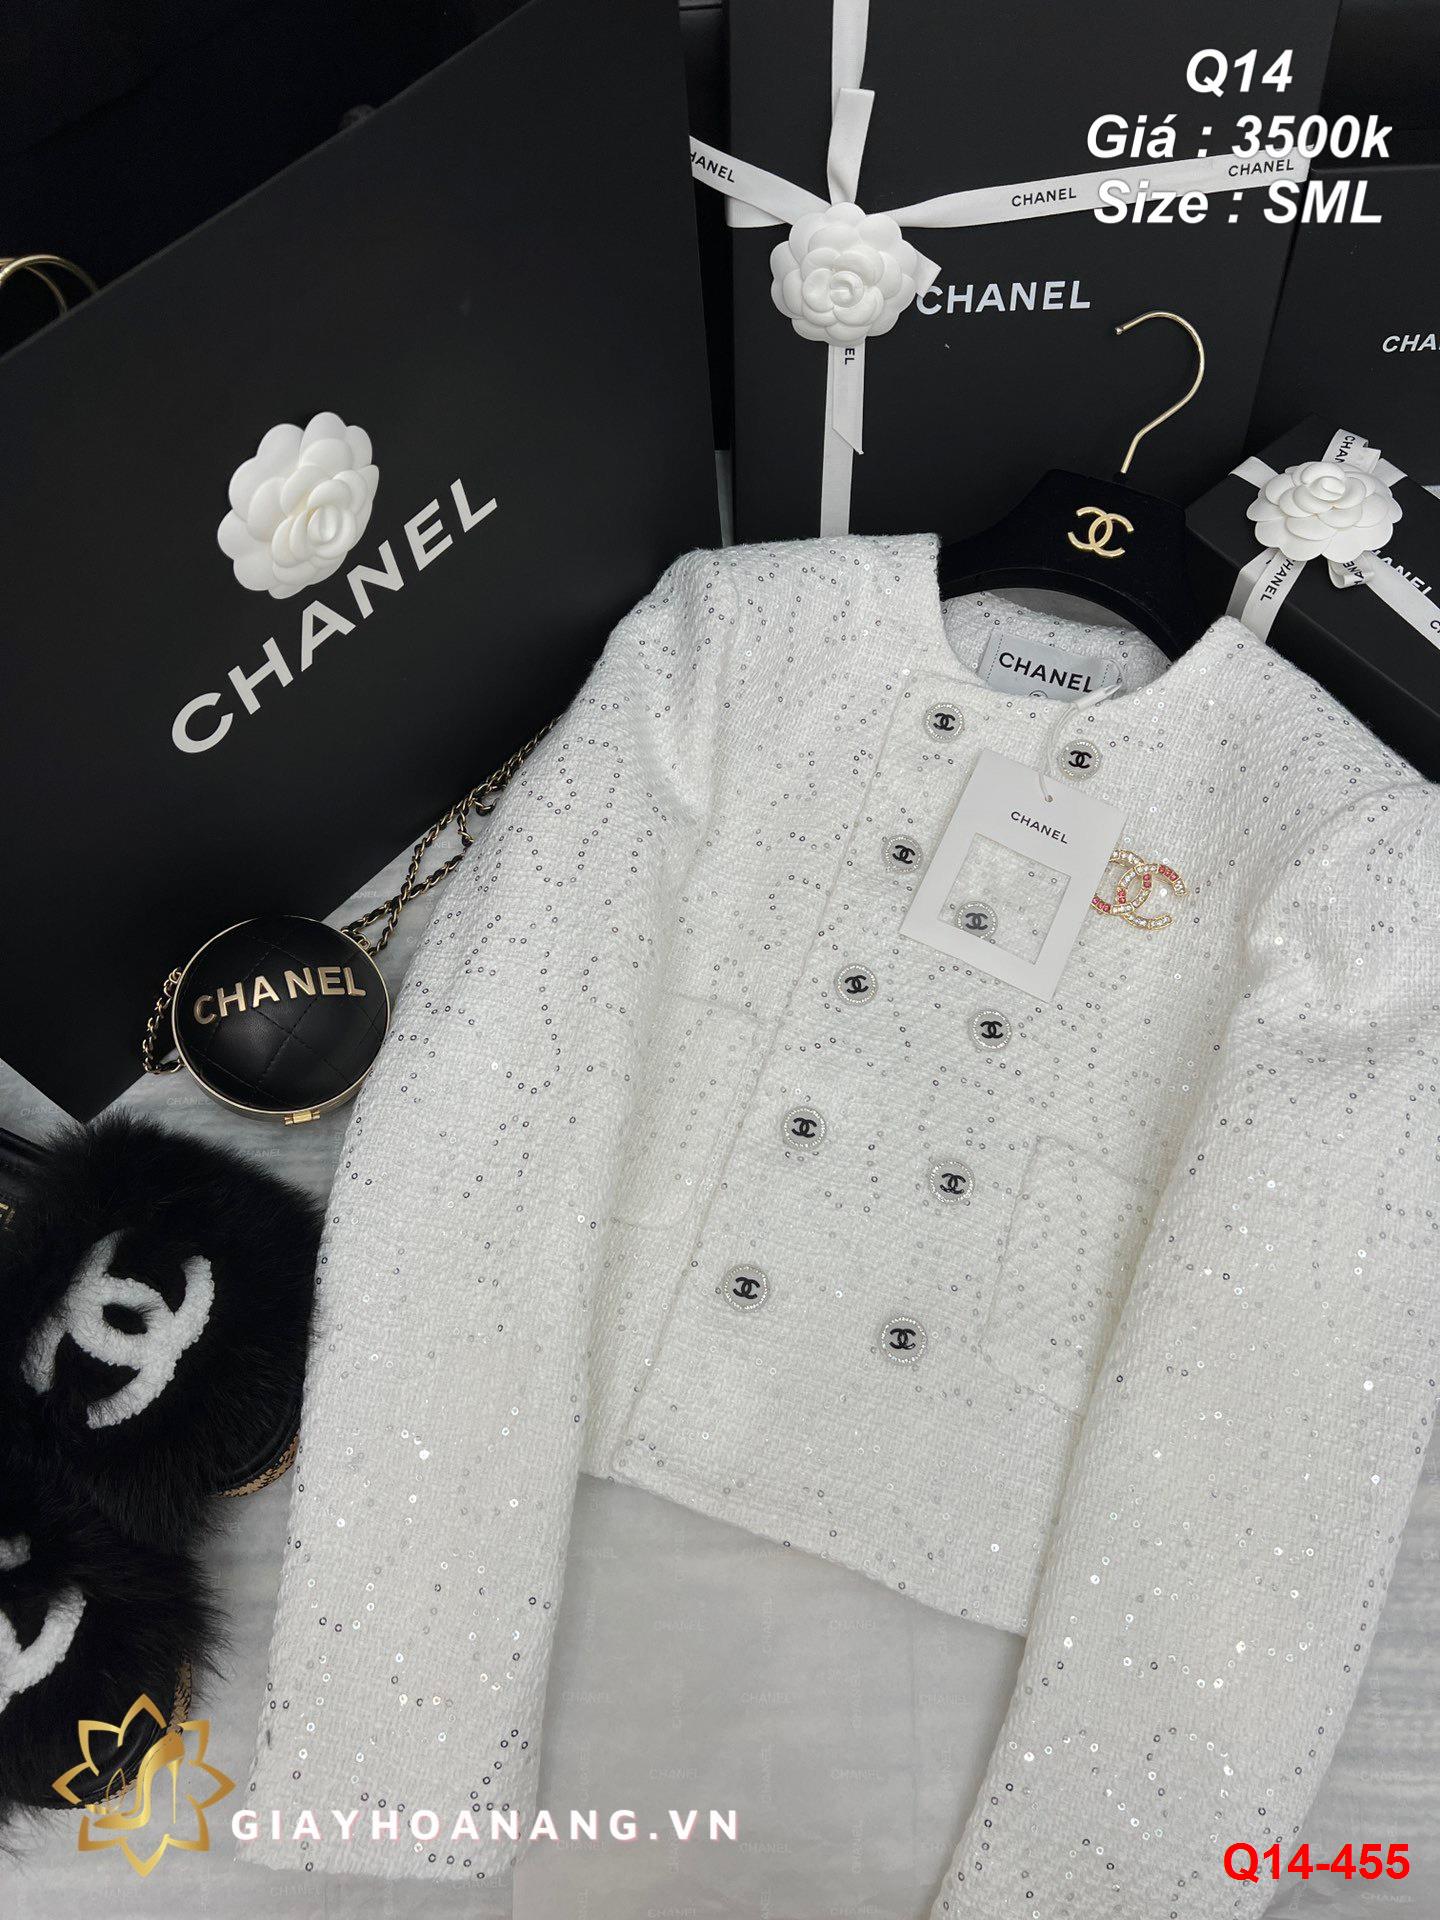 Q14-455 Áo Chanel siêu cấp